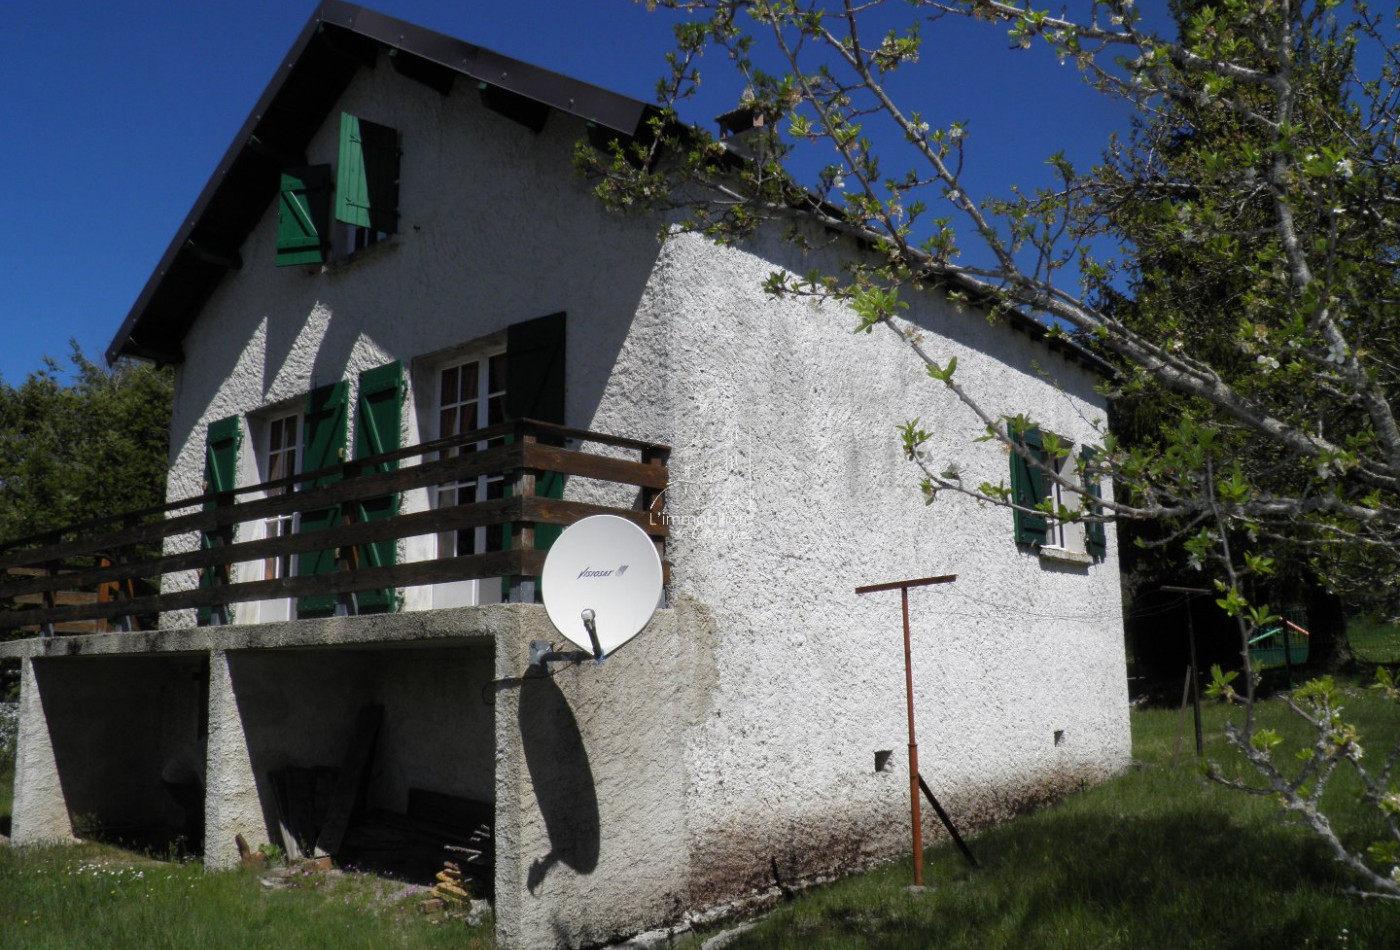 sale Maison de village Saint Sauveur Camprieu